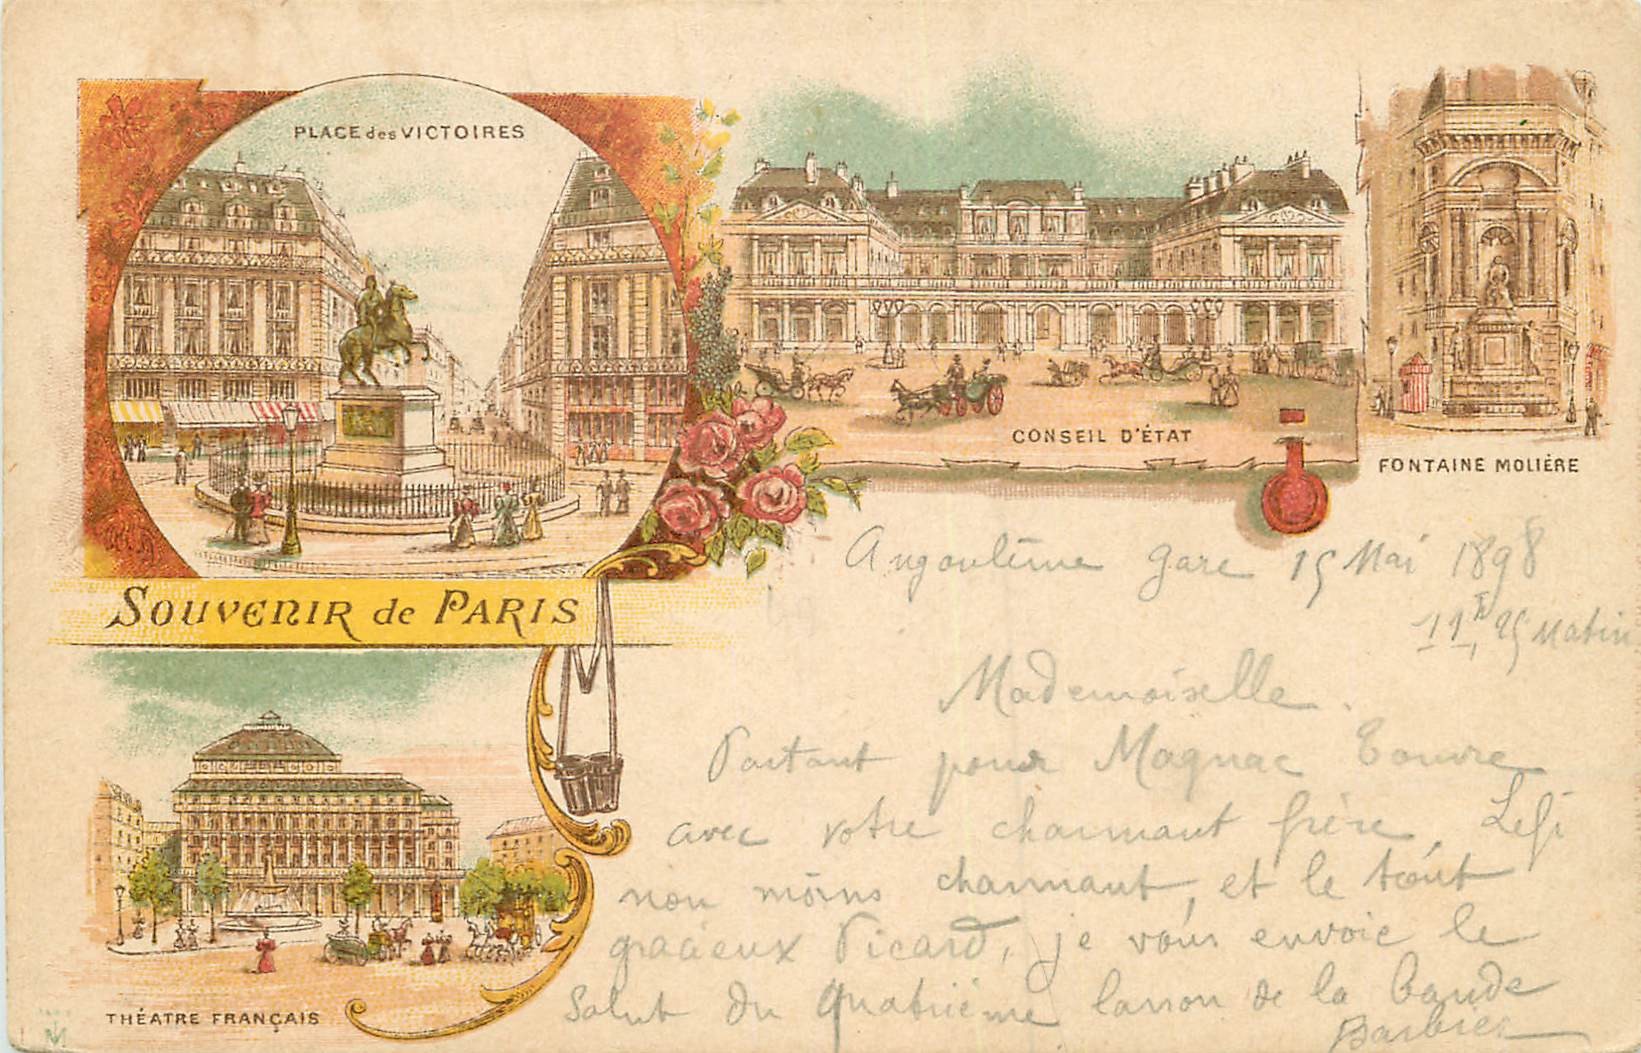 WW PARIS en 1898. Place des Victoires, Conseil d'Etat, Fontaine Molière et Théâtre Français